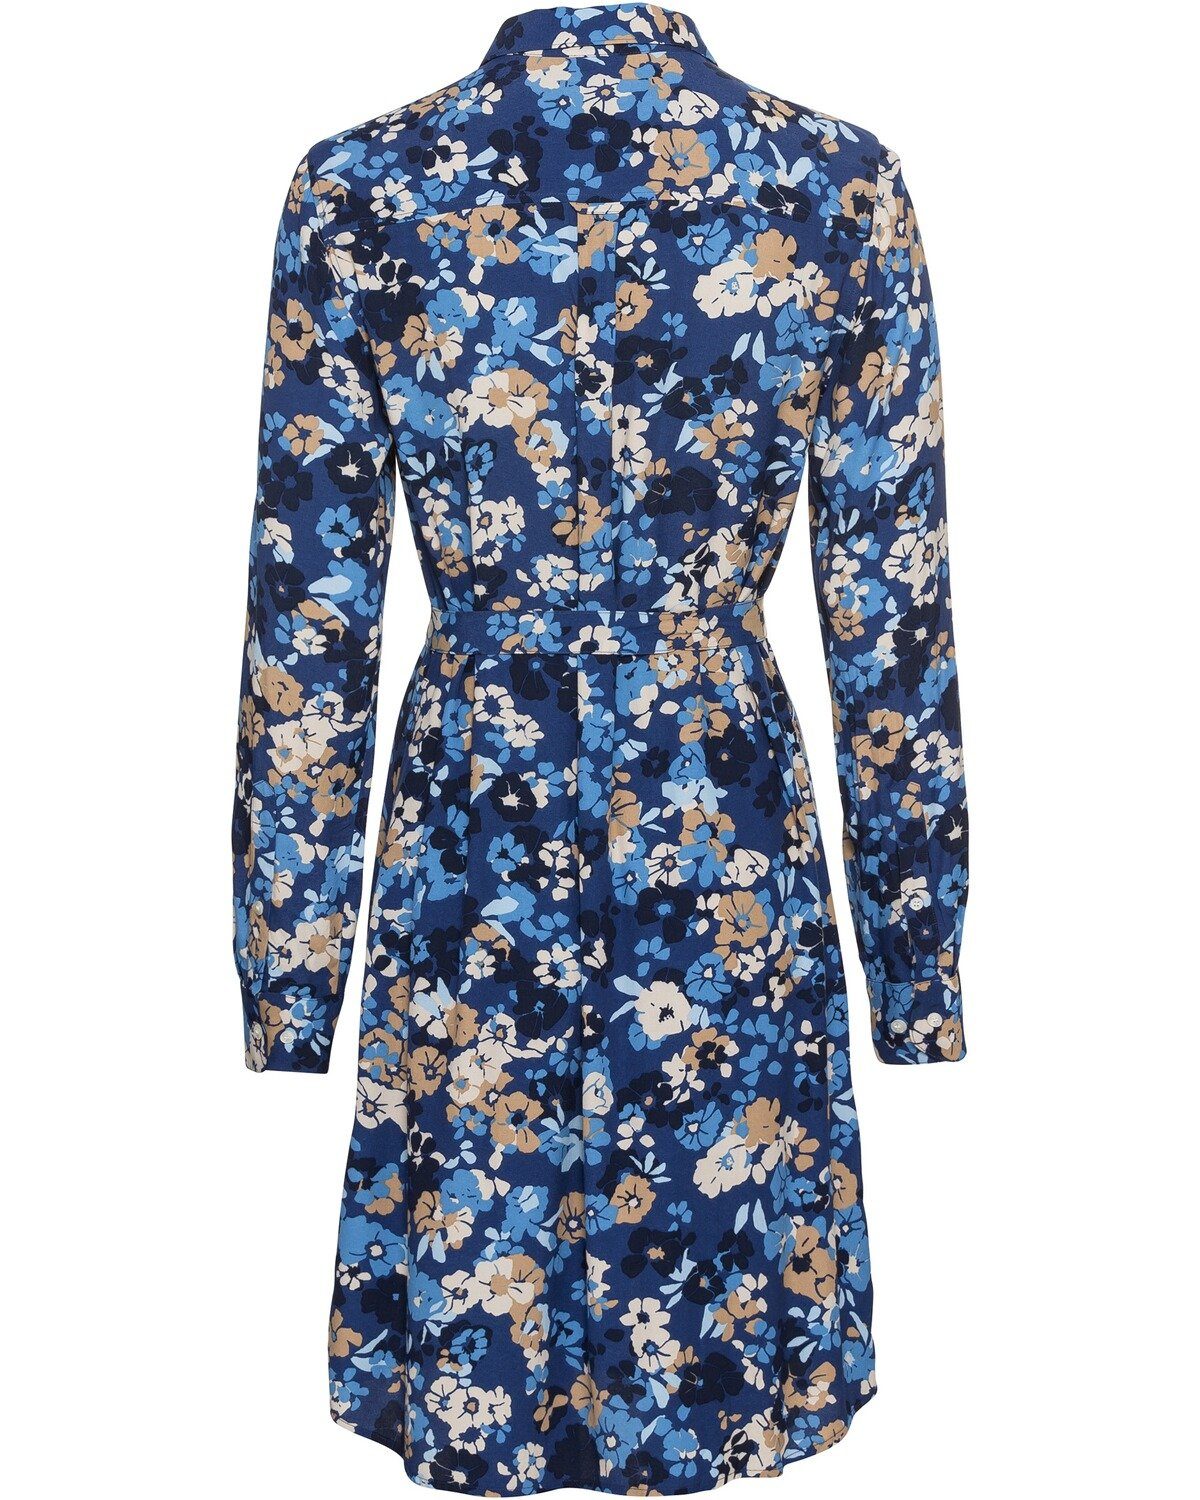 Gant Blau mit Blumen-Print Hemdblusenkleid Kleid